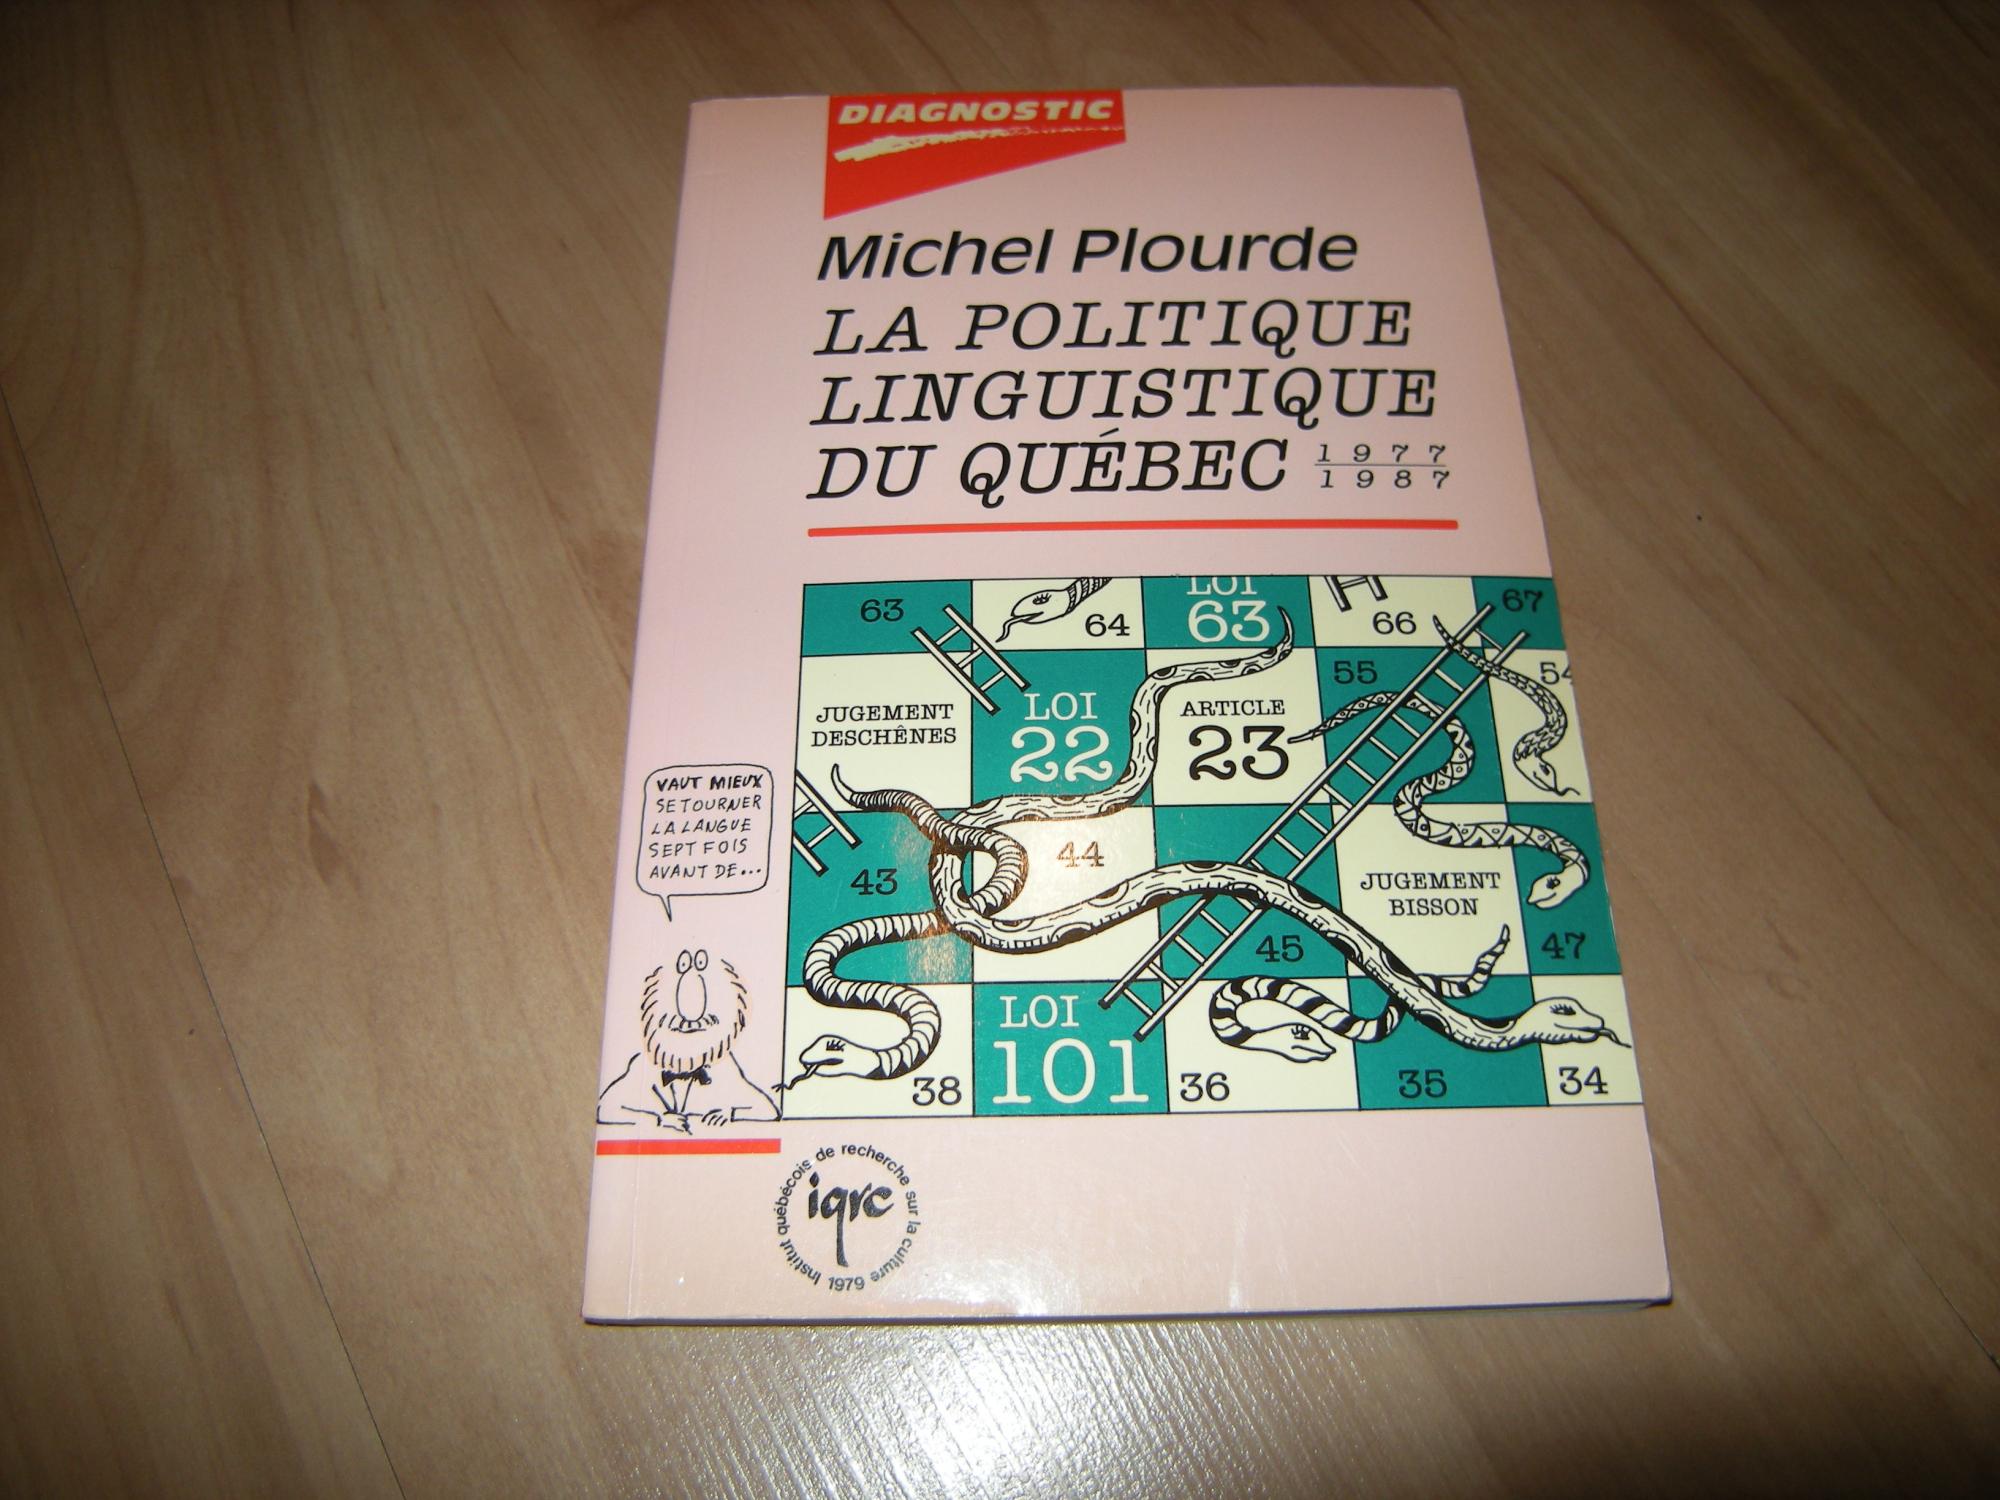 La politique linguistique du Québec 1977-1987 - Michel Plourde